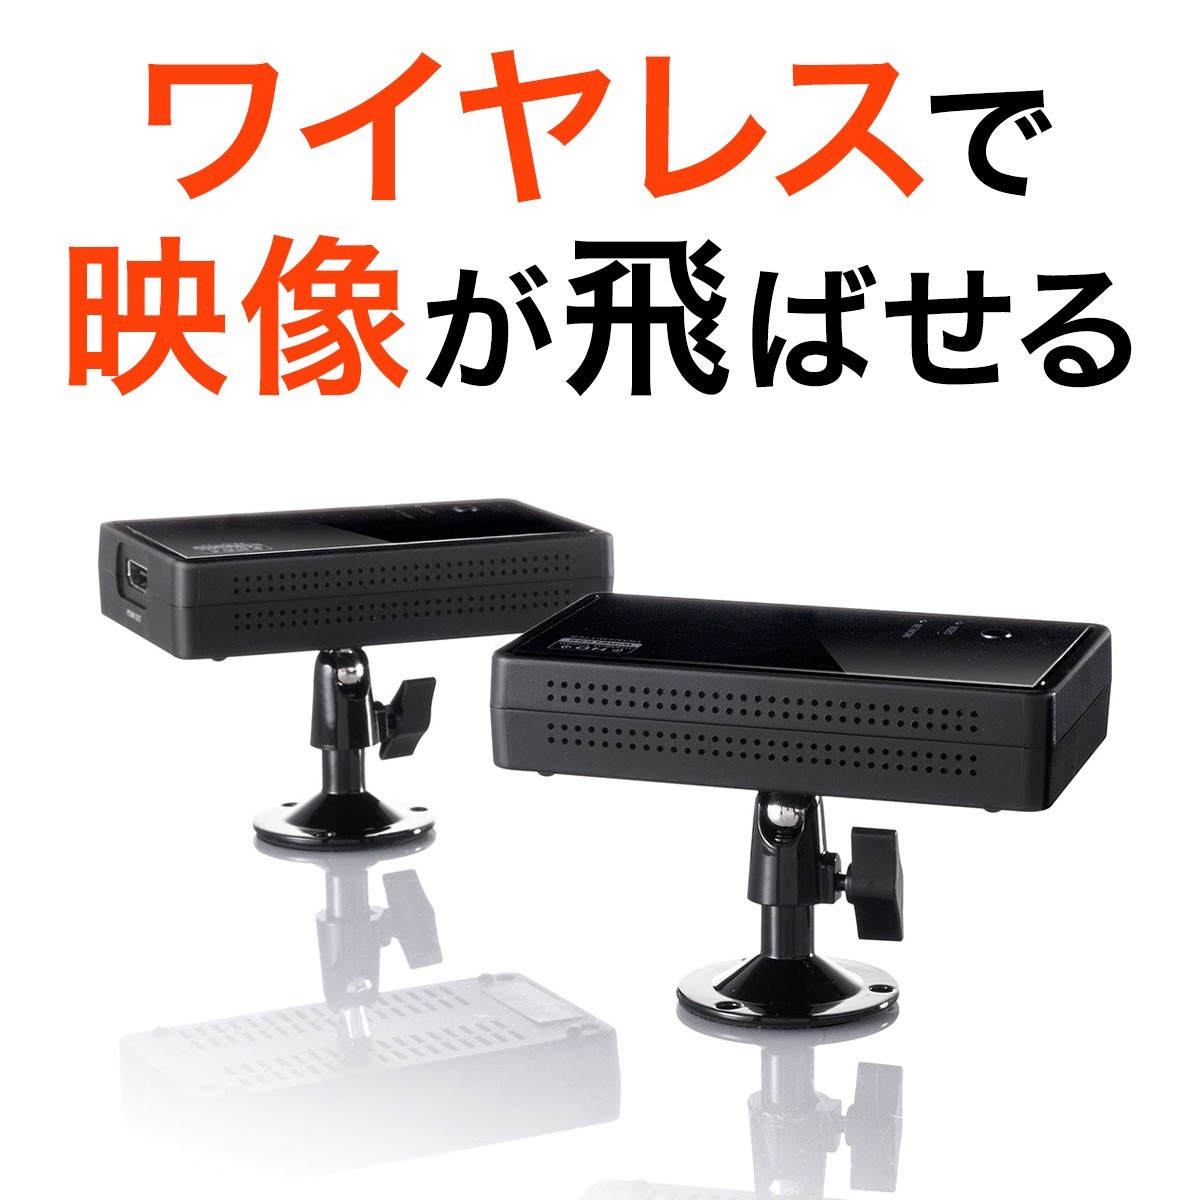 ワイヤレス HDMI 無線 送受信 エクステンダー テレビ PS4 HDMI 